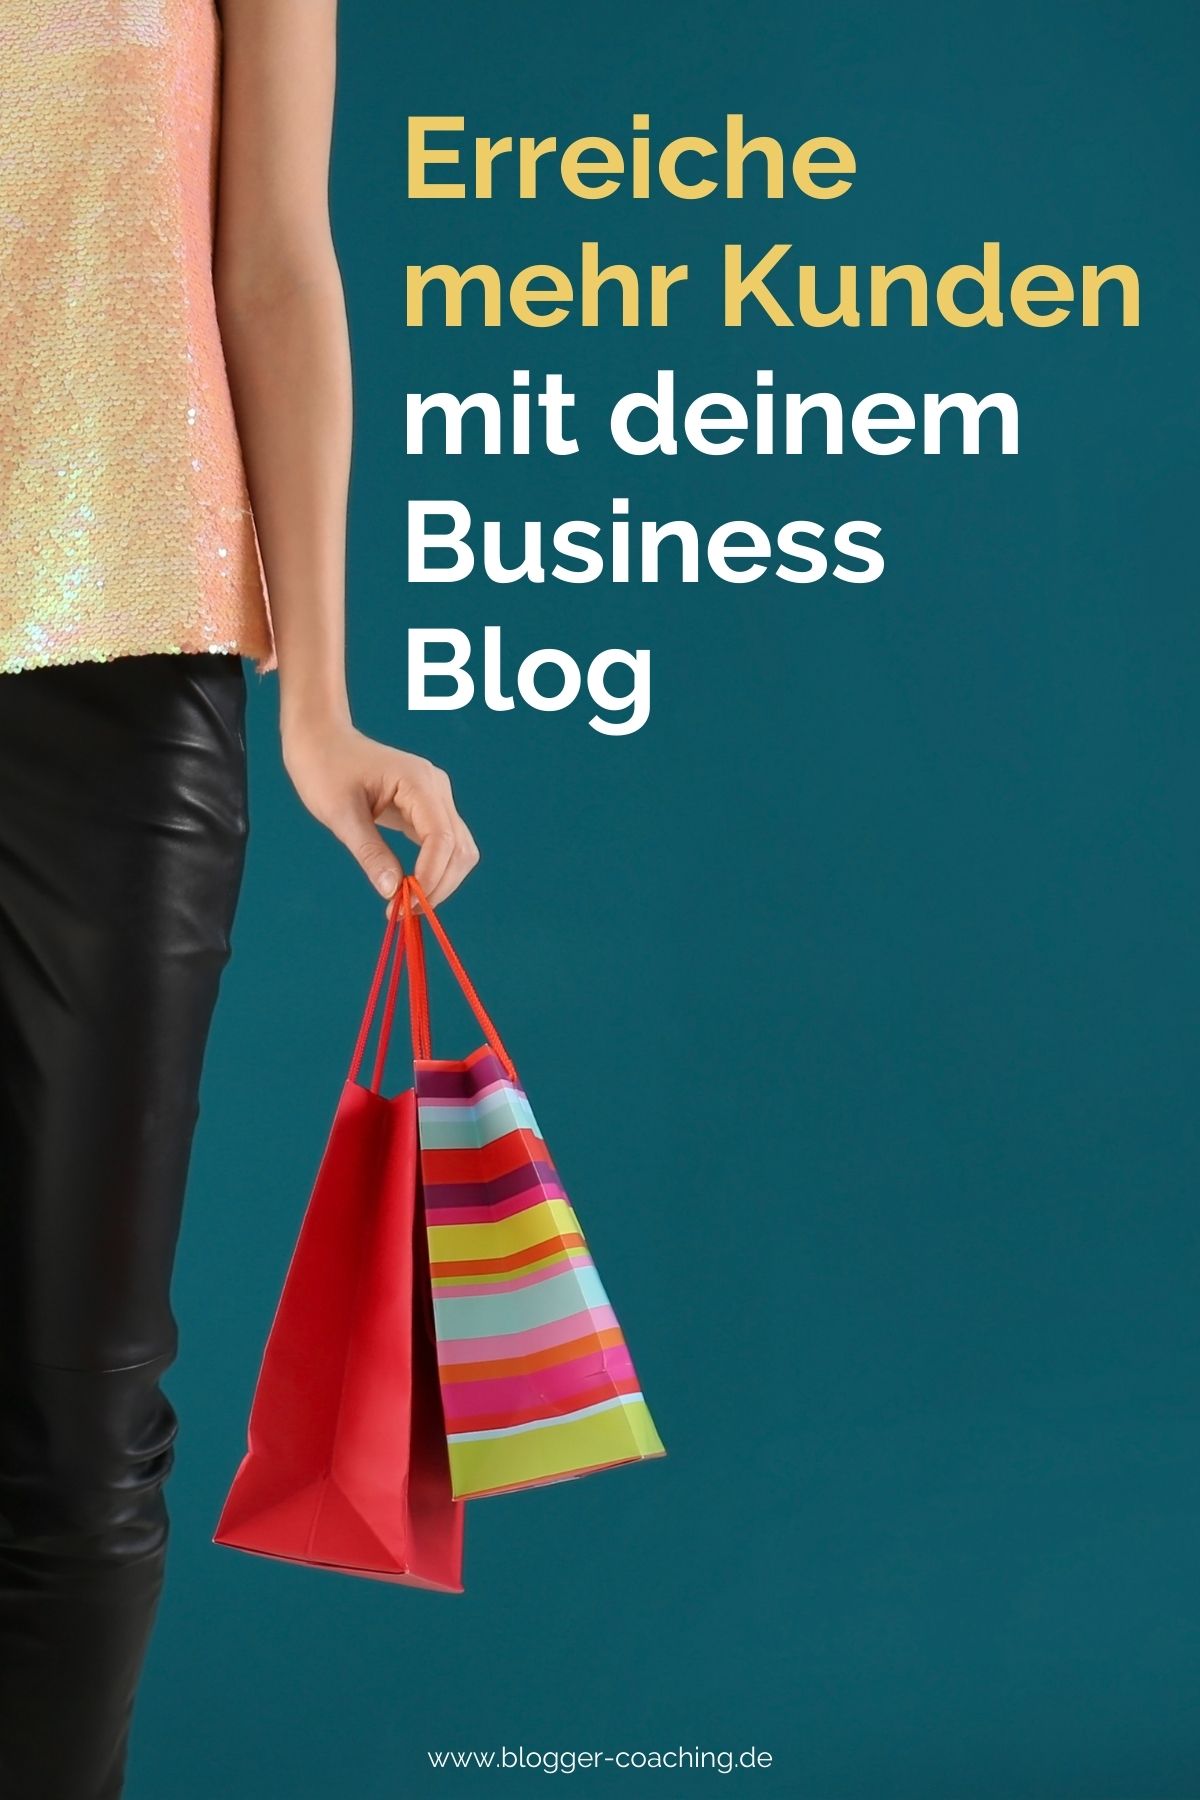 Business Blog: 7 Vorteile eines Blogs für dein Unternehmen | Blogger-Coaching.de